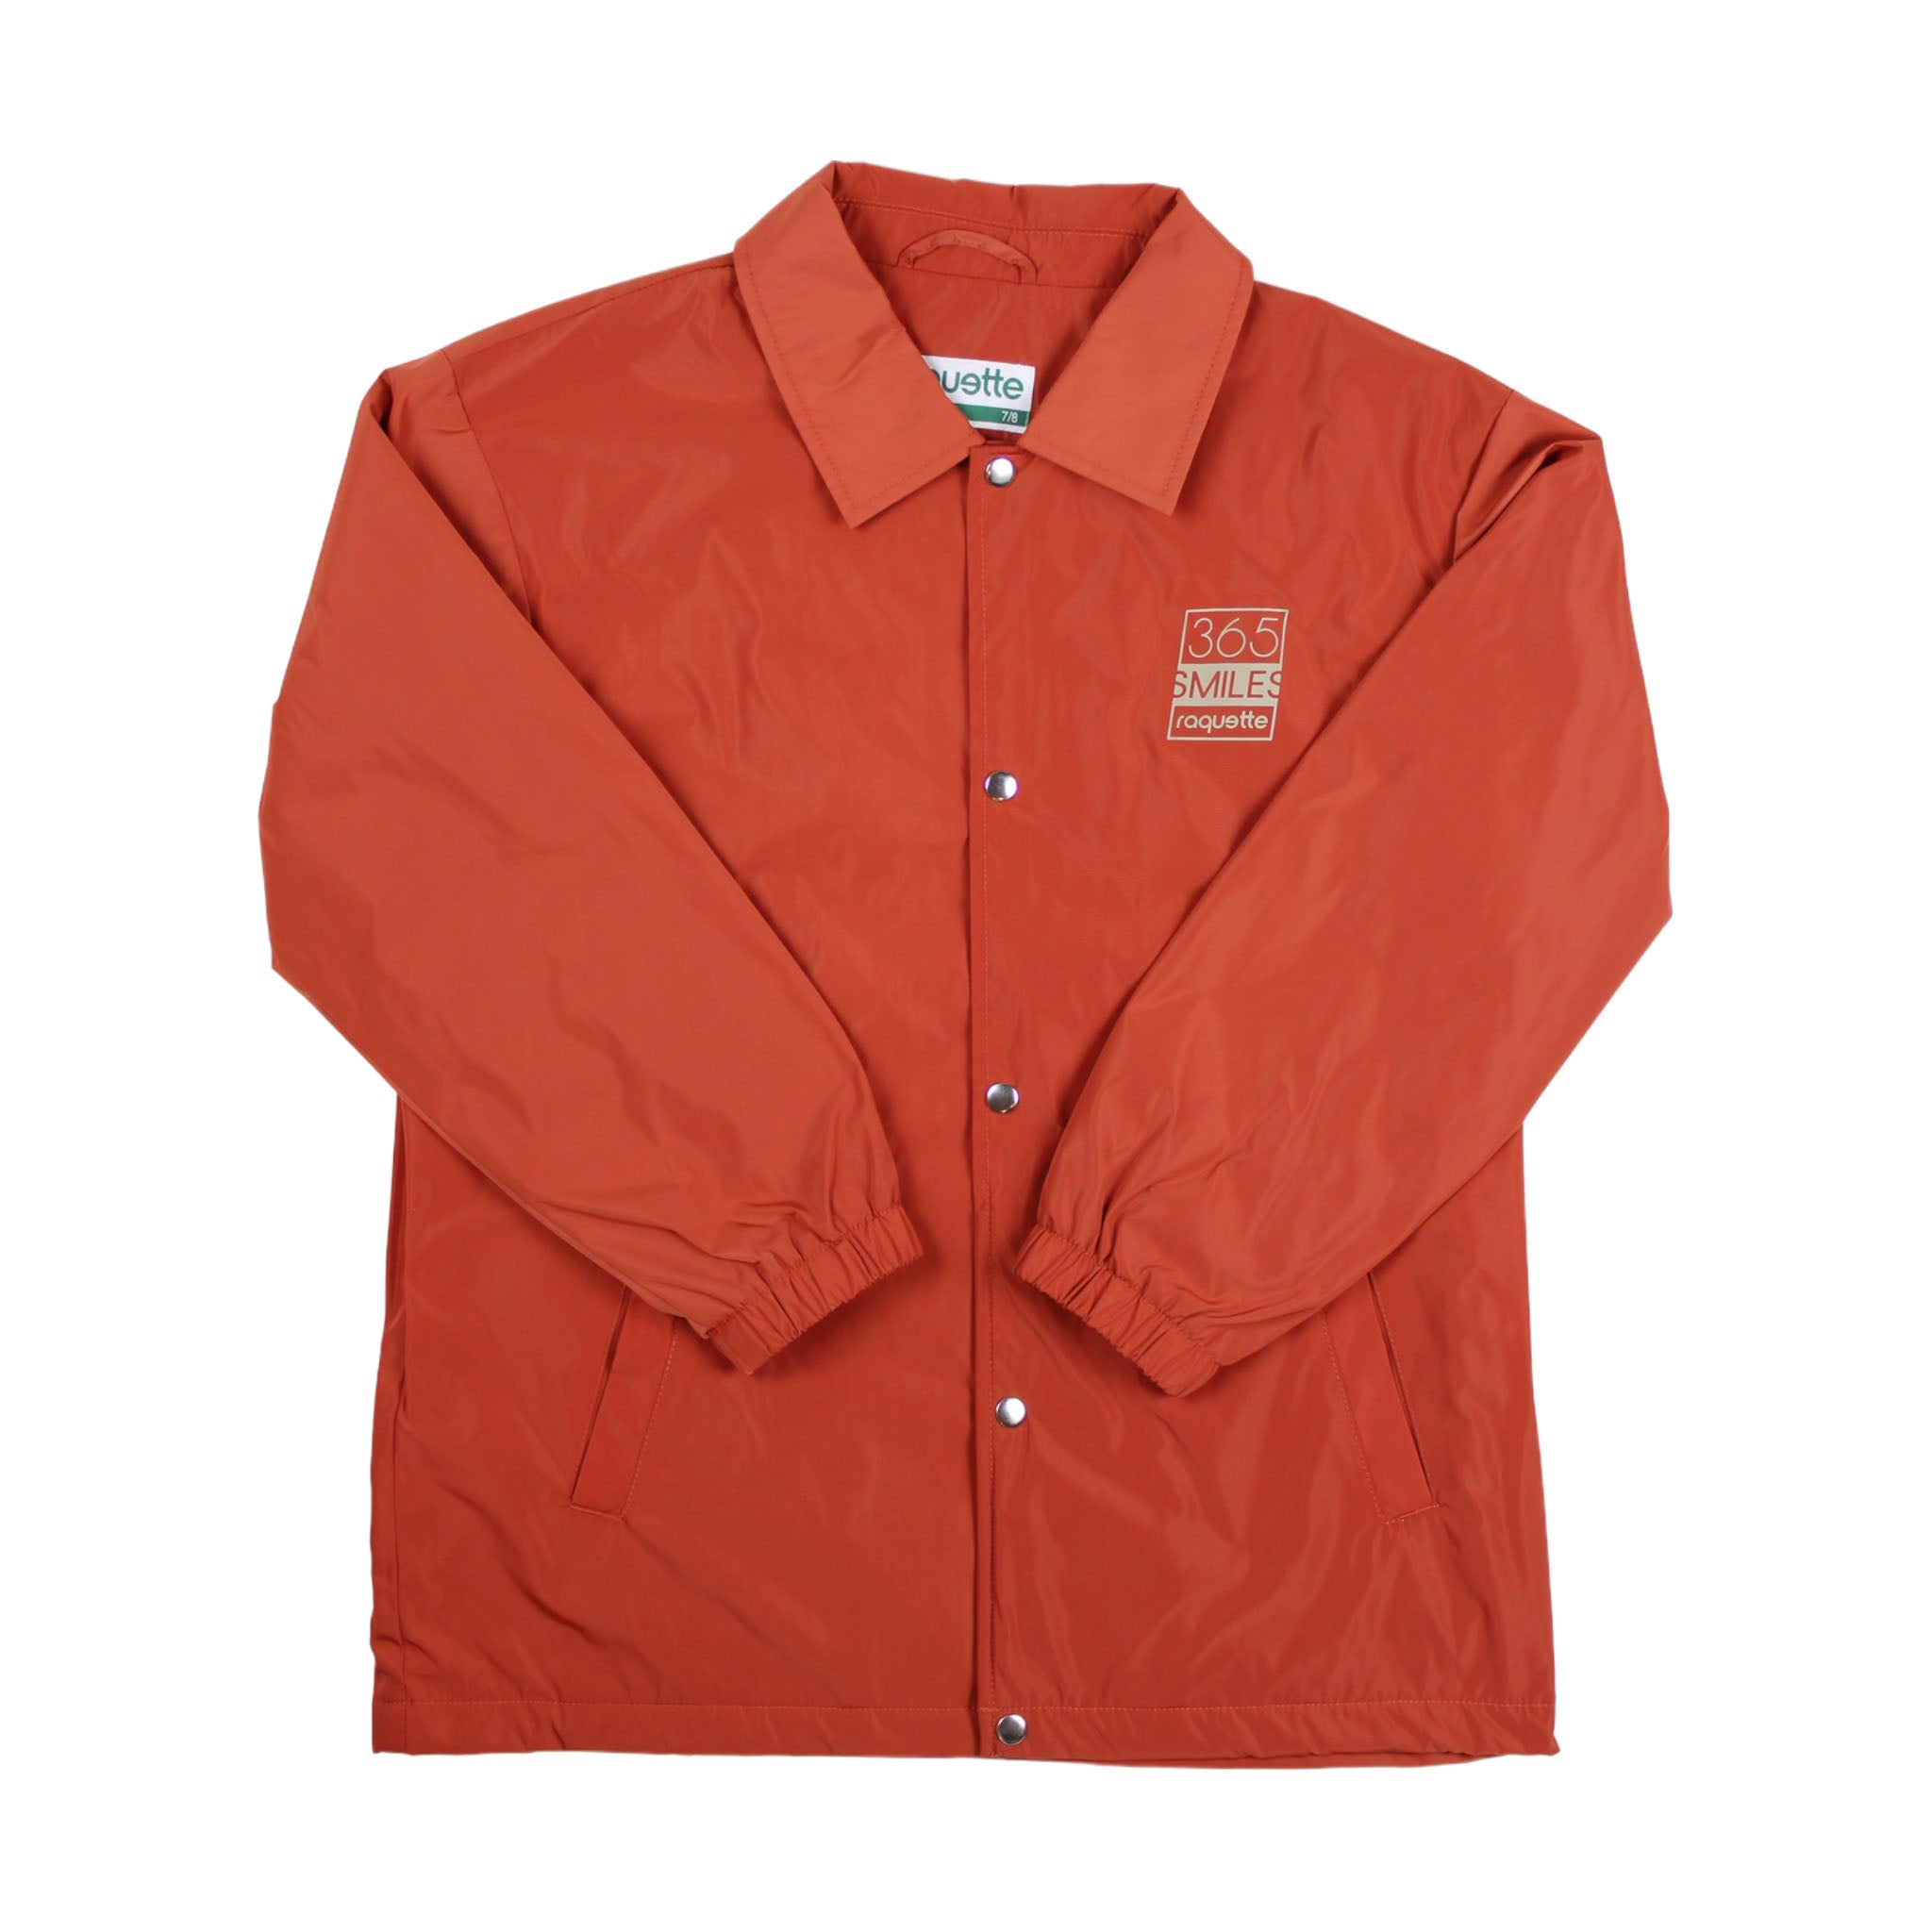 Boys & Girls Orange Jacket